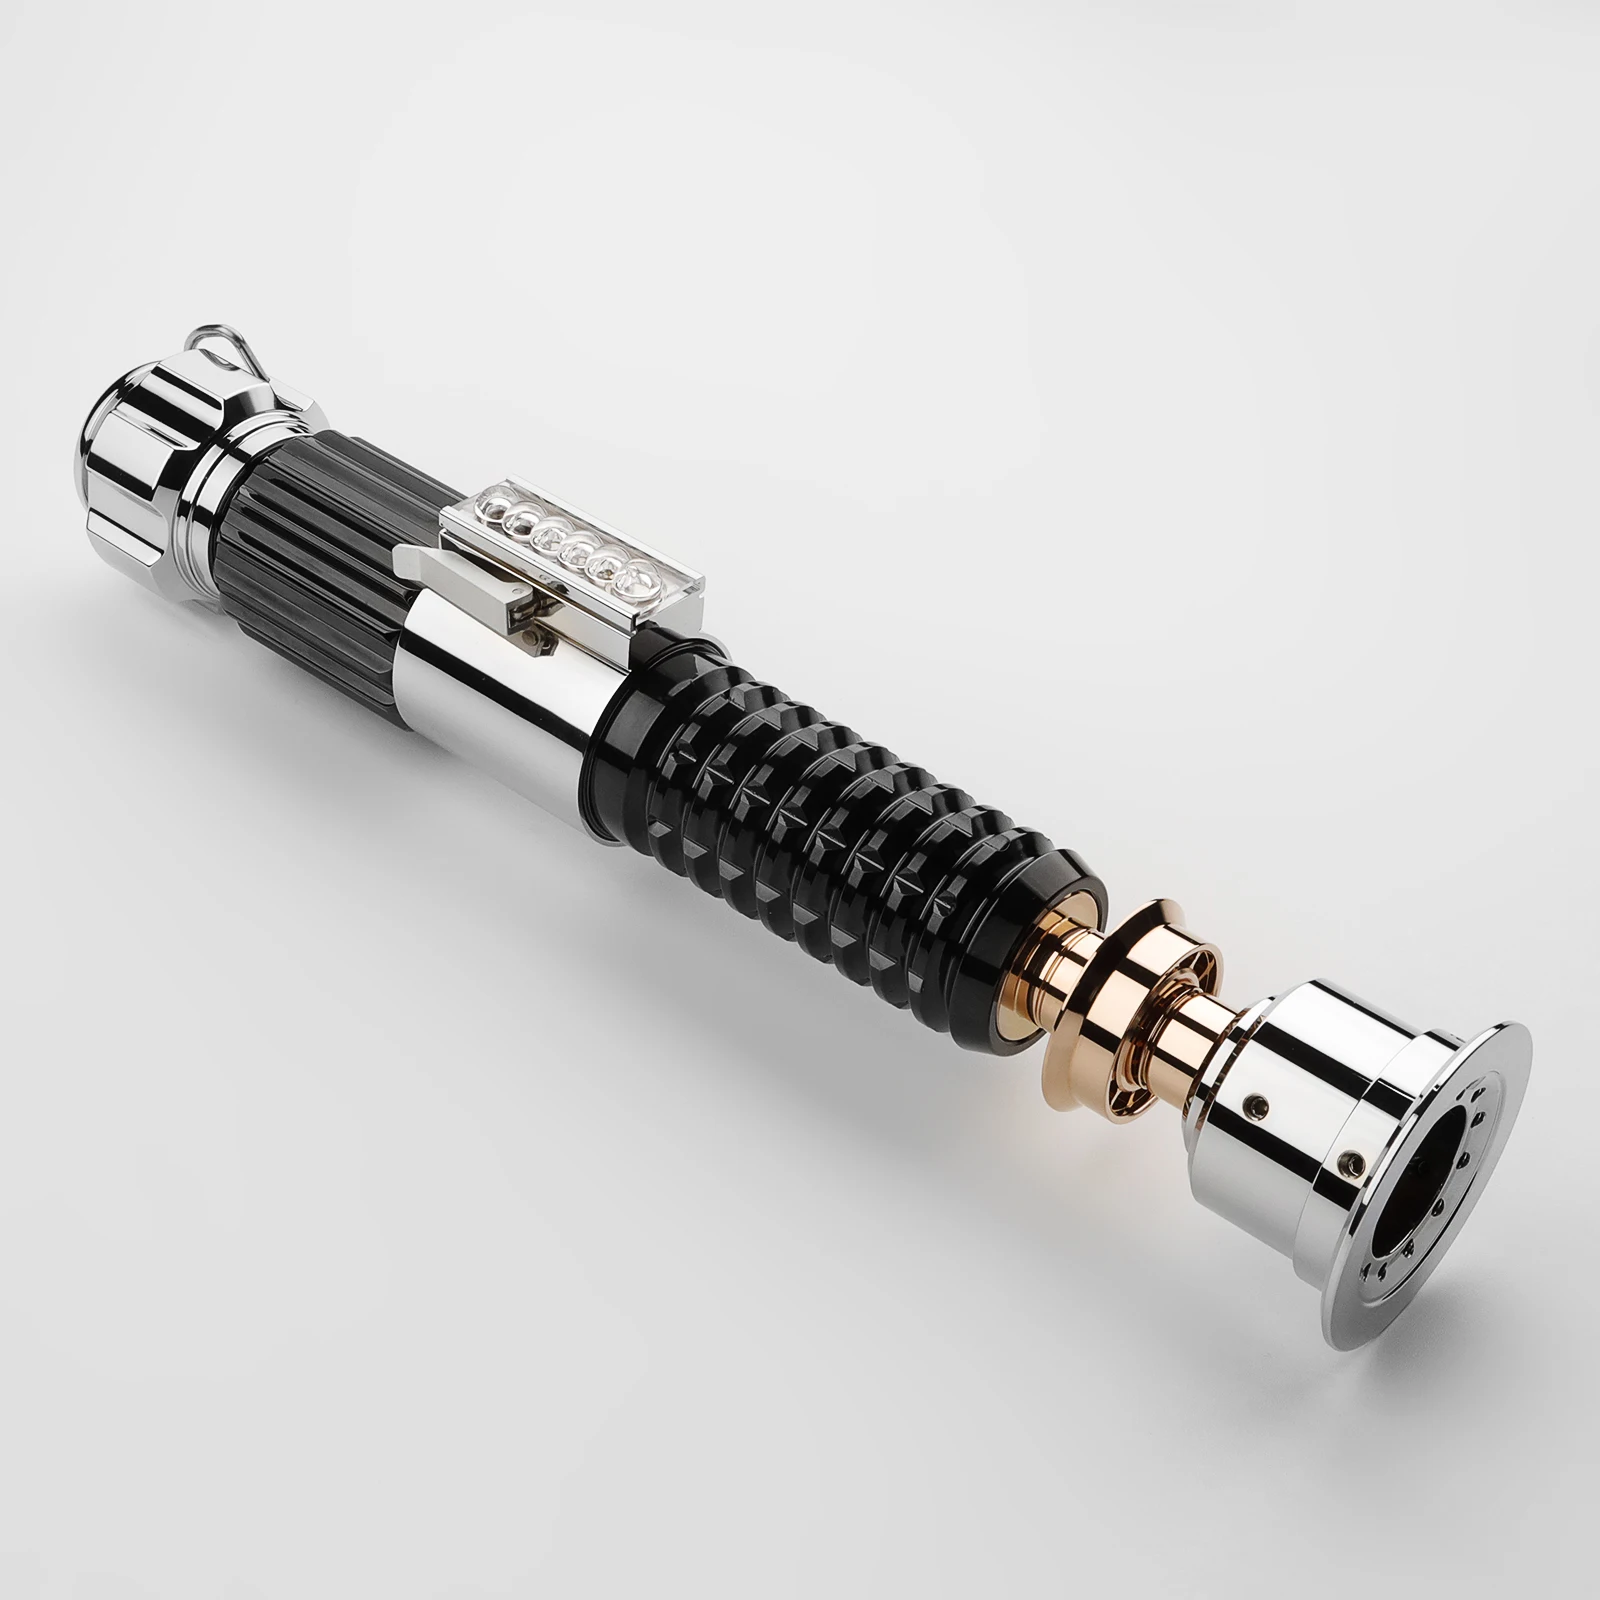 

LGT Saberstudio световой меч Оби-Ван, металлическая пустая рукоятка без электронного комплекта или лезвия, только Металлическая рукоятка для тяжелого дулейного светового меча